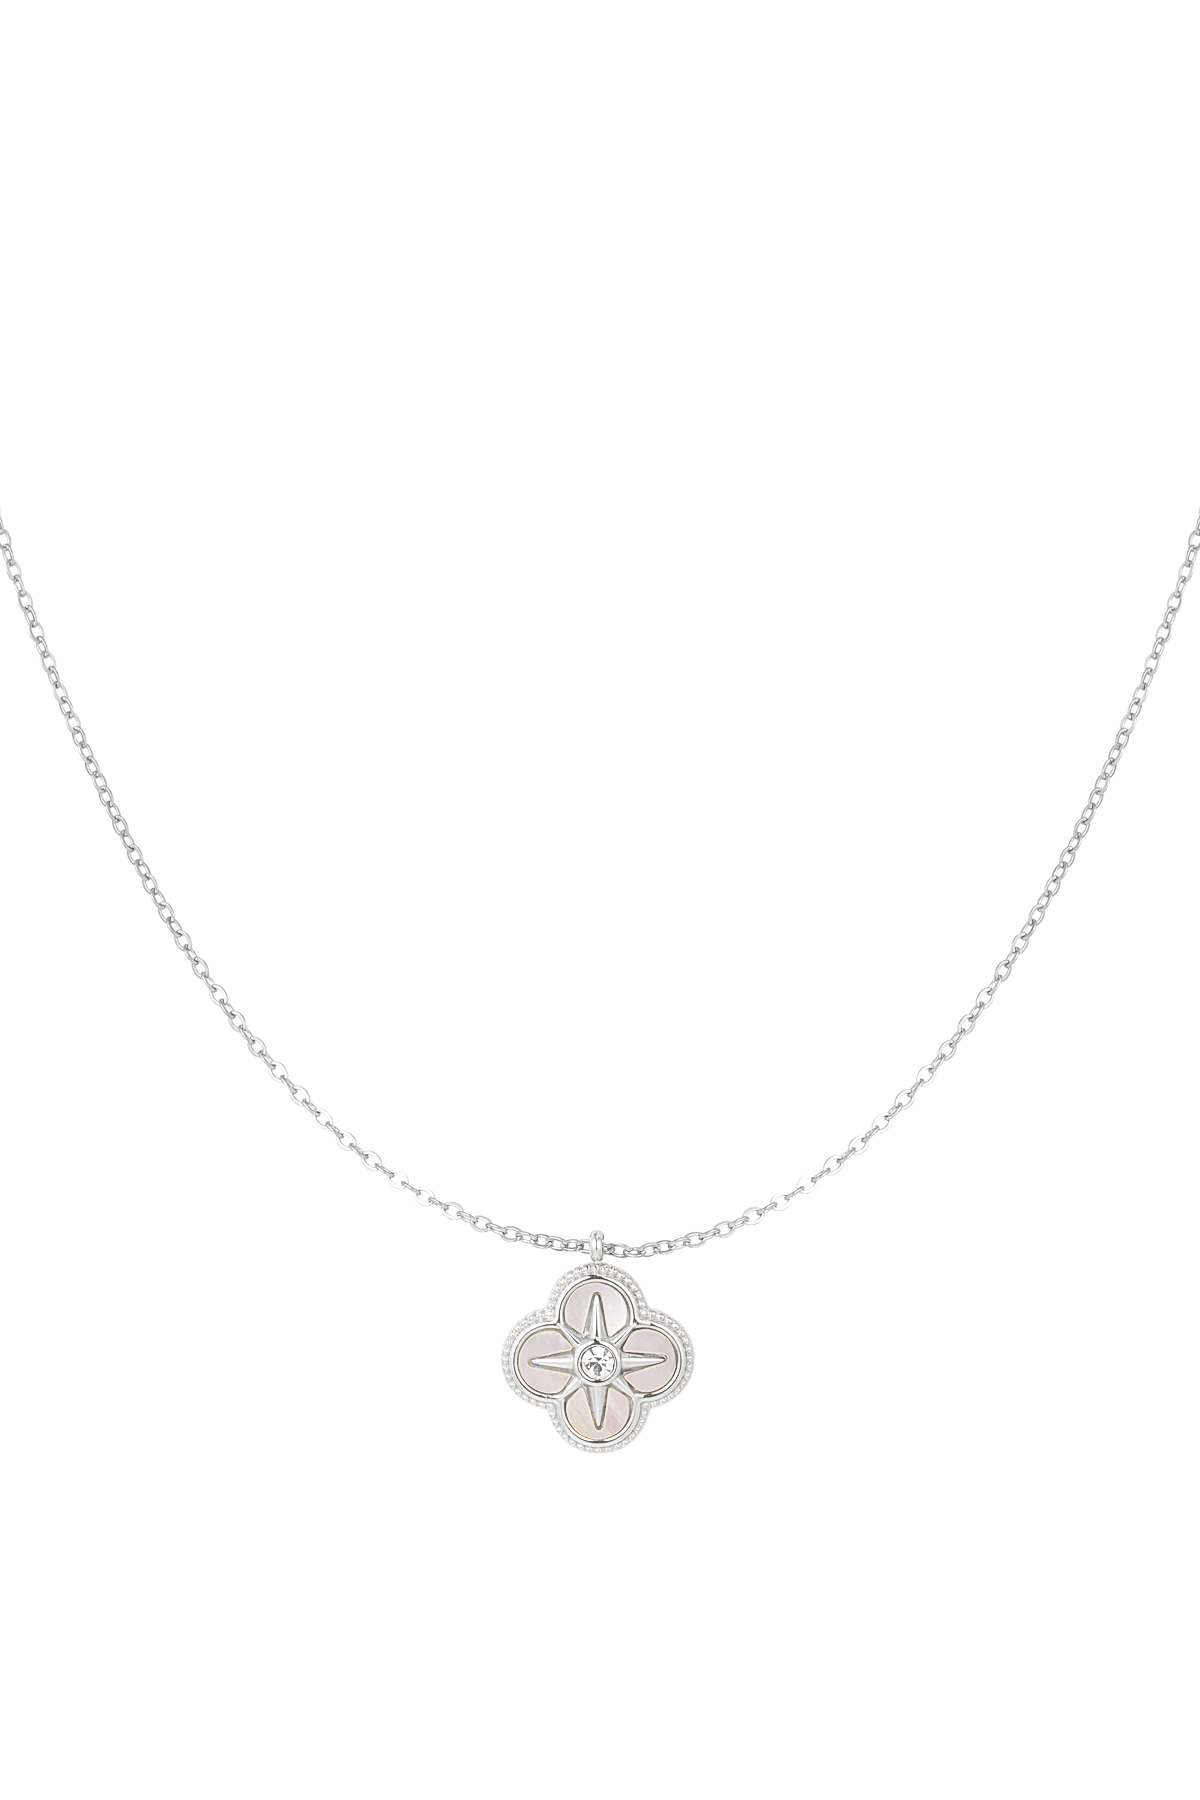 Halskette mit Blume und Stern - Silber 